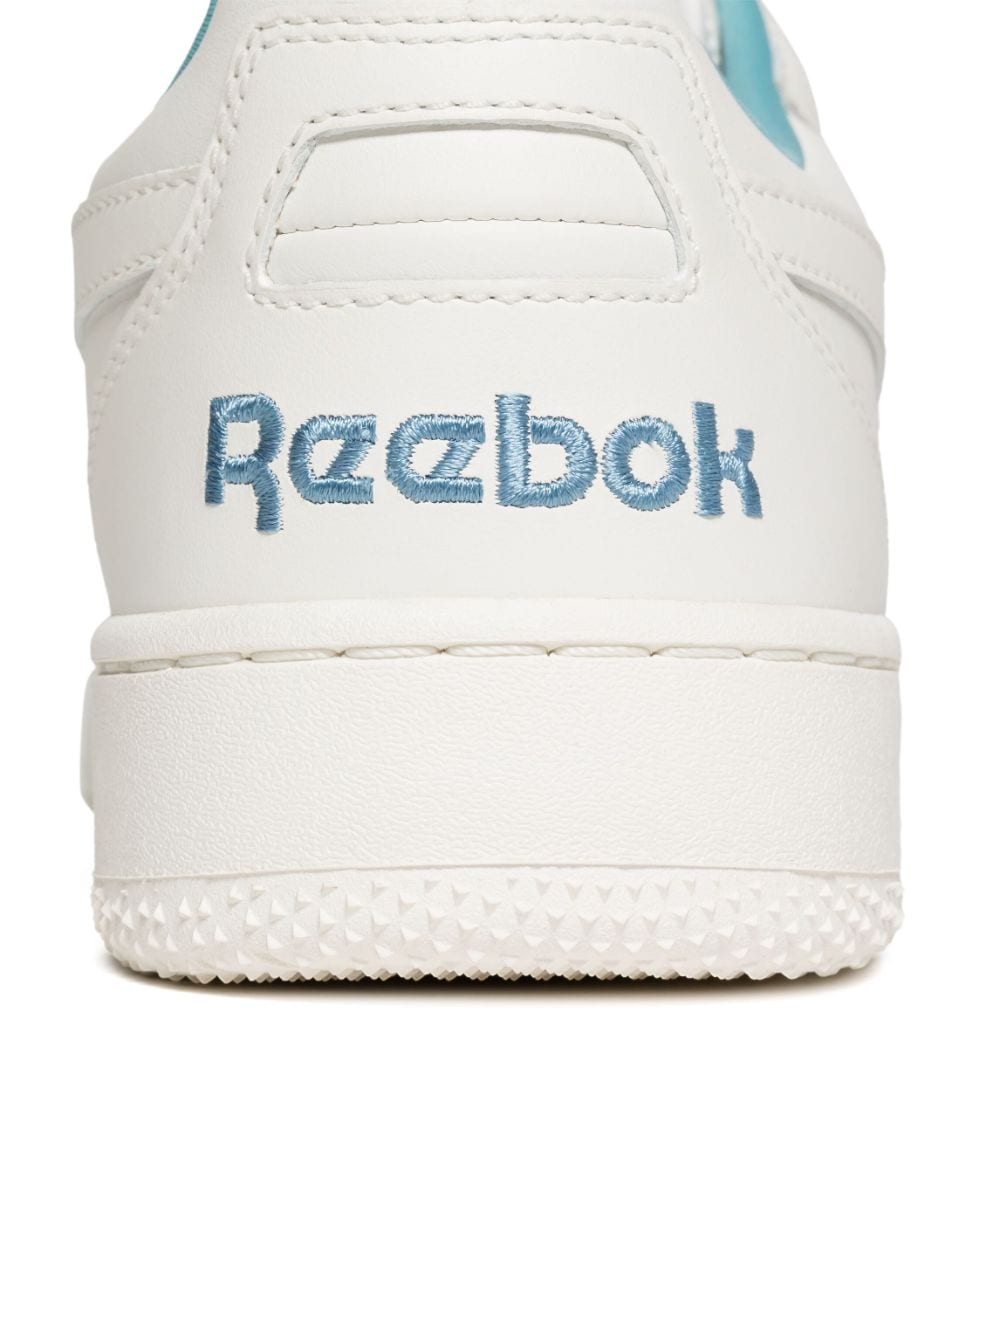 Sneaker BB 4000 II in ecopelle bianca